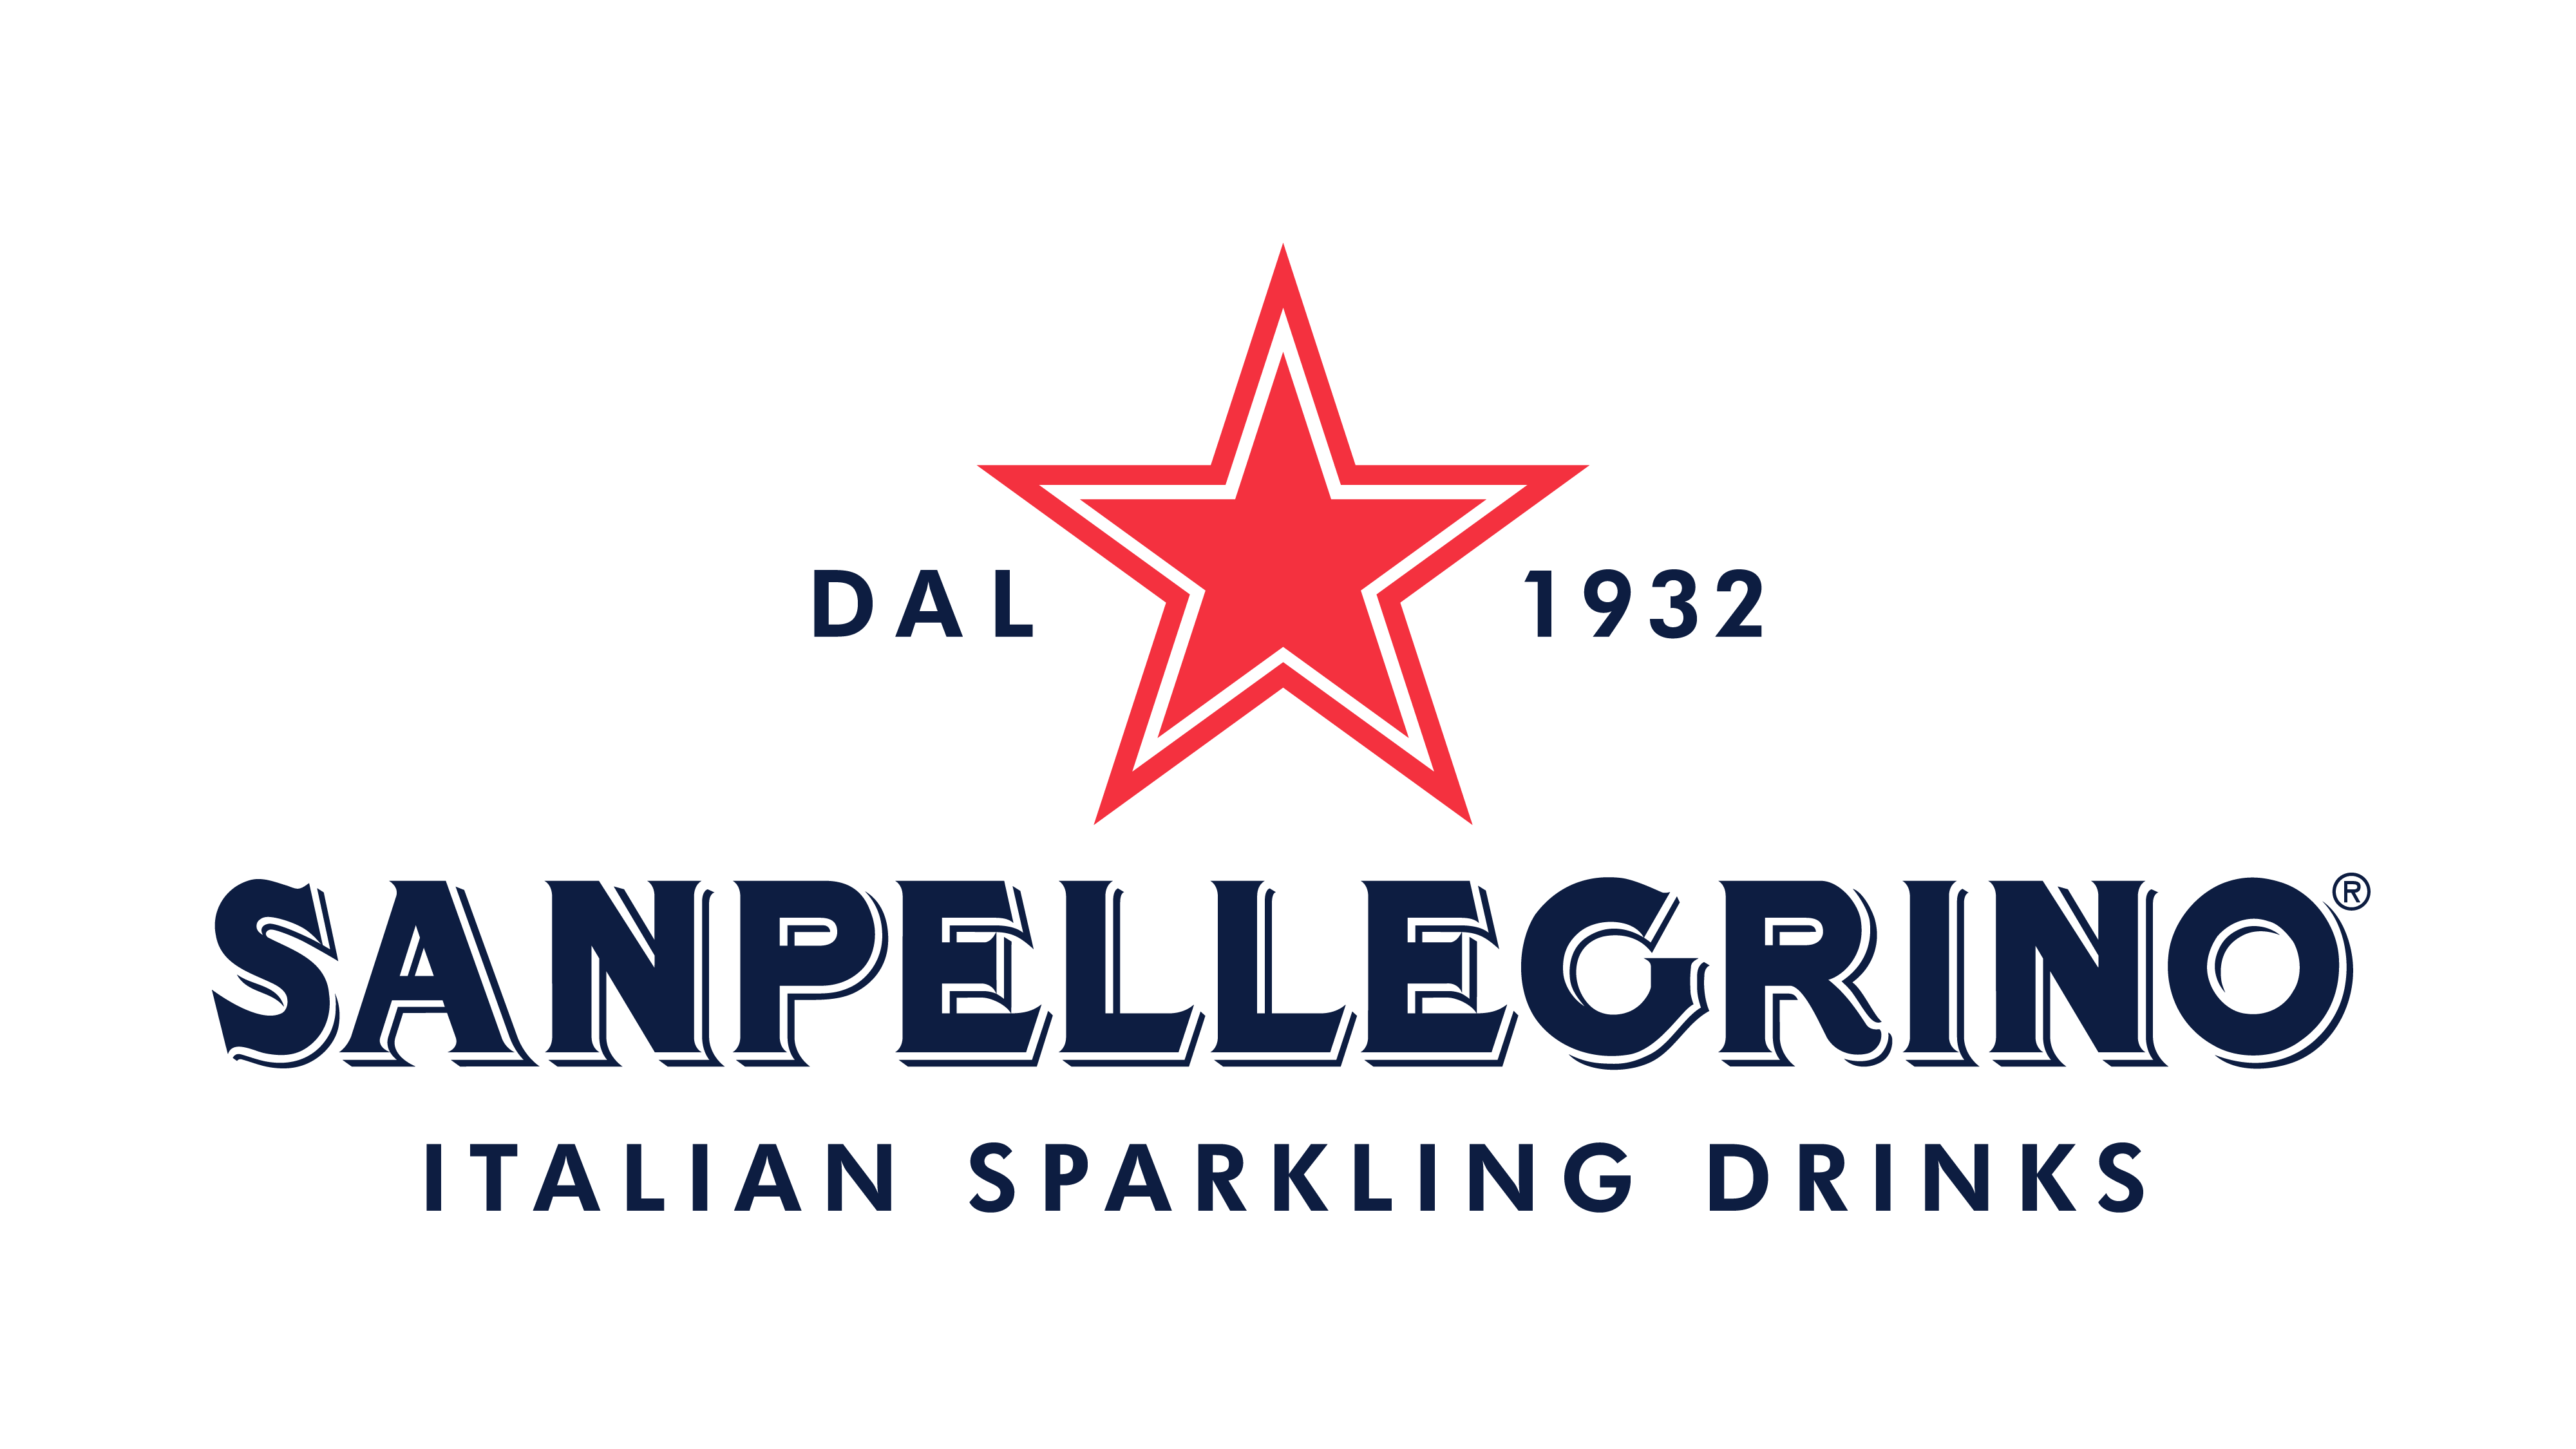 Sanpellegrino® Italian Sparkling Drinks